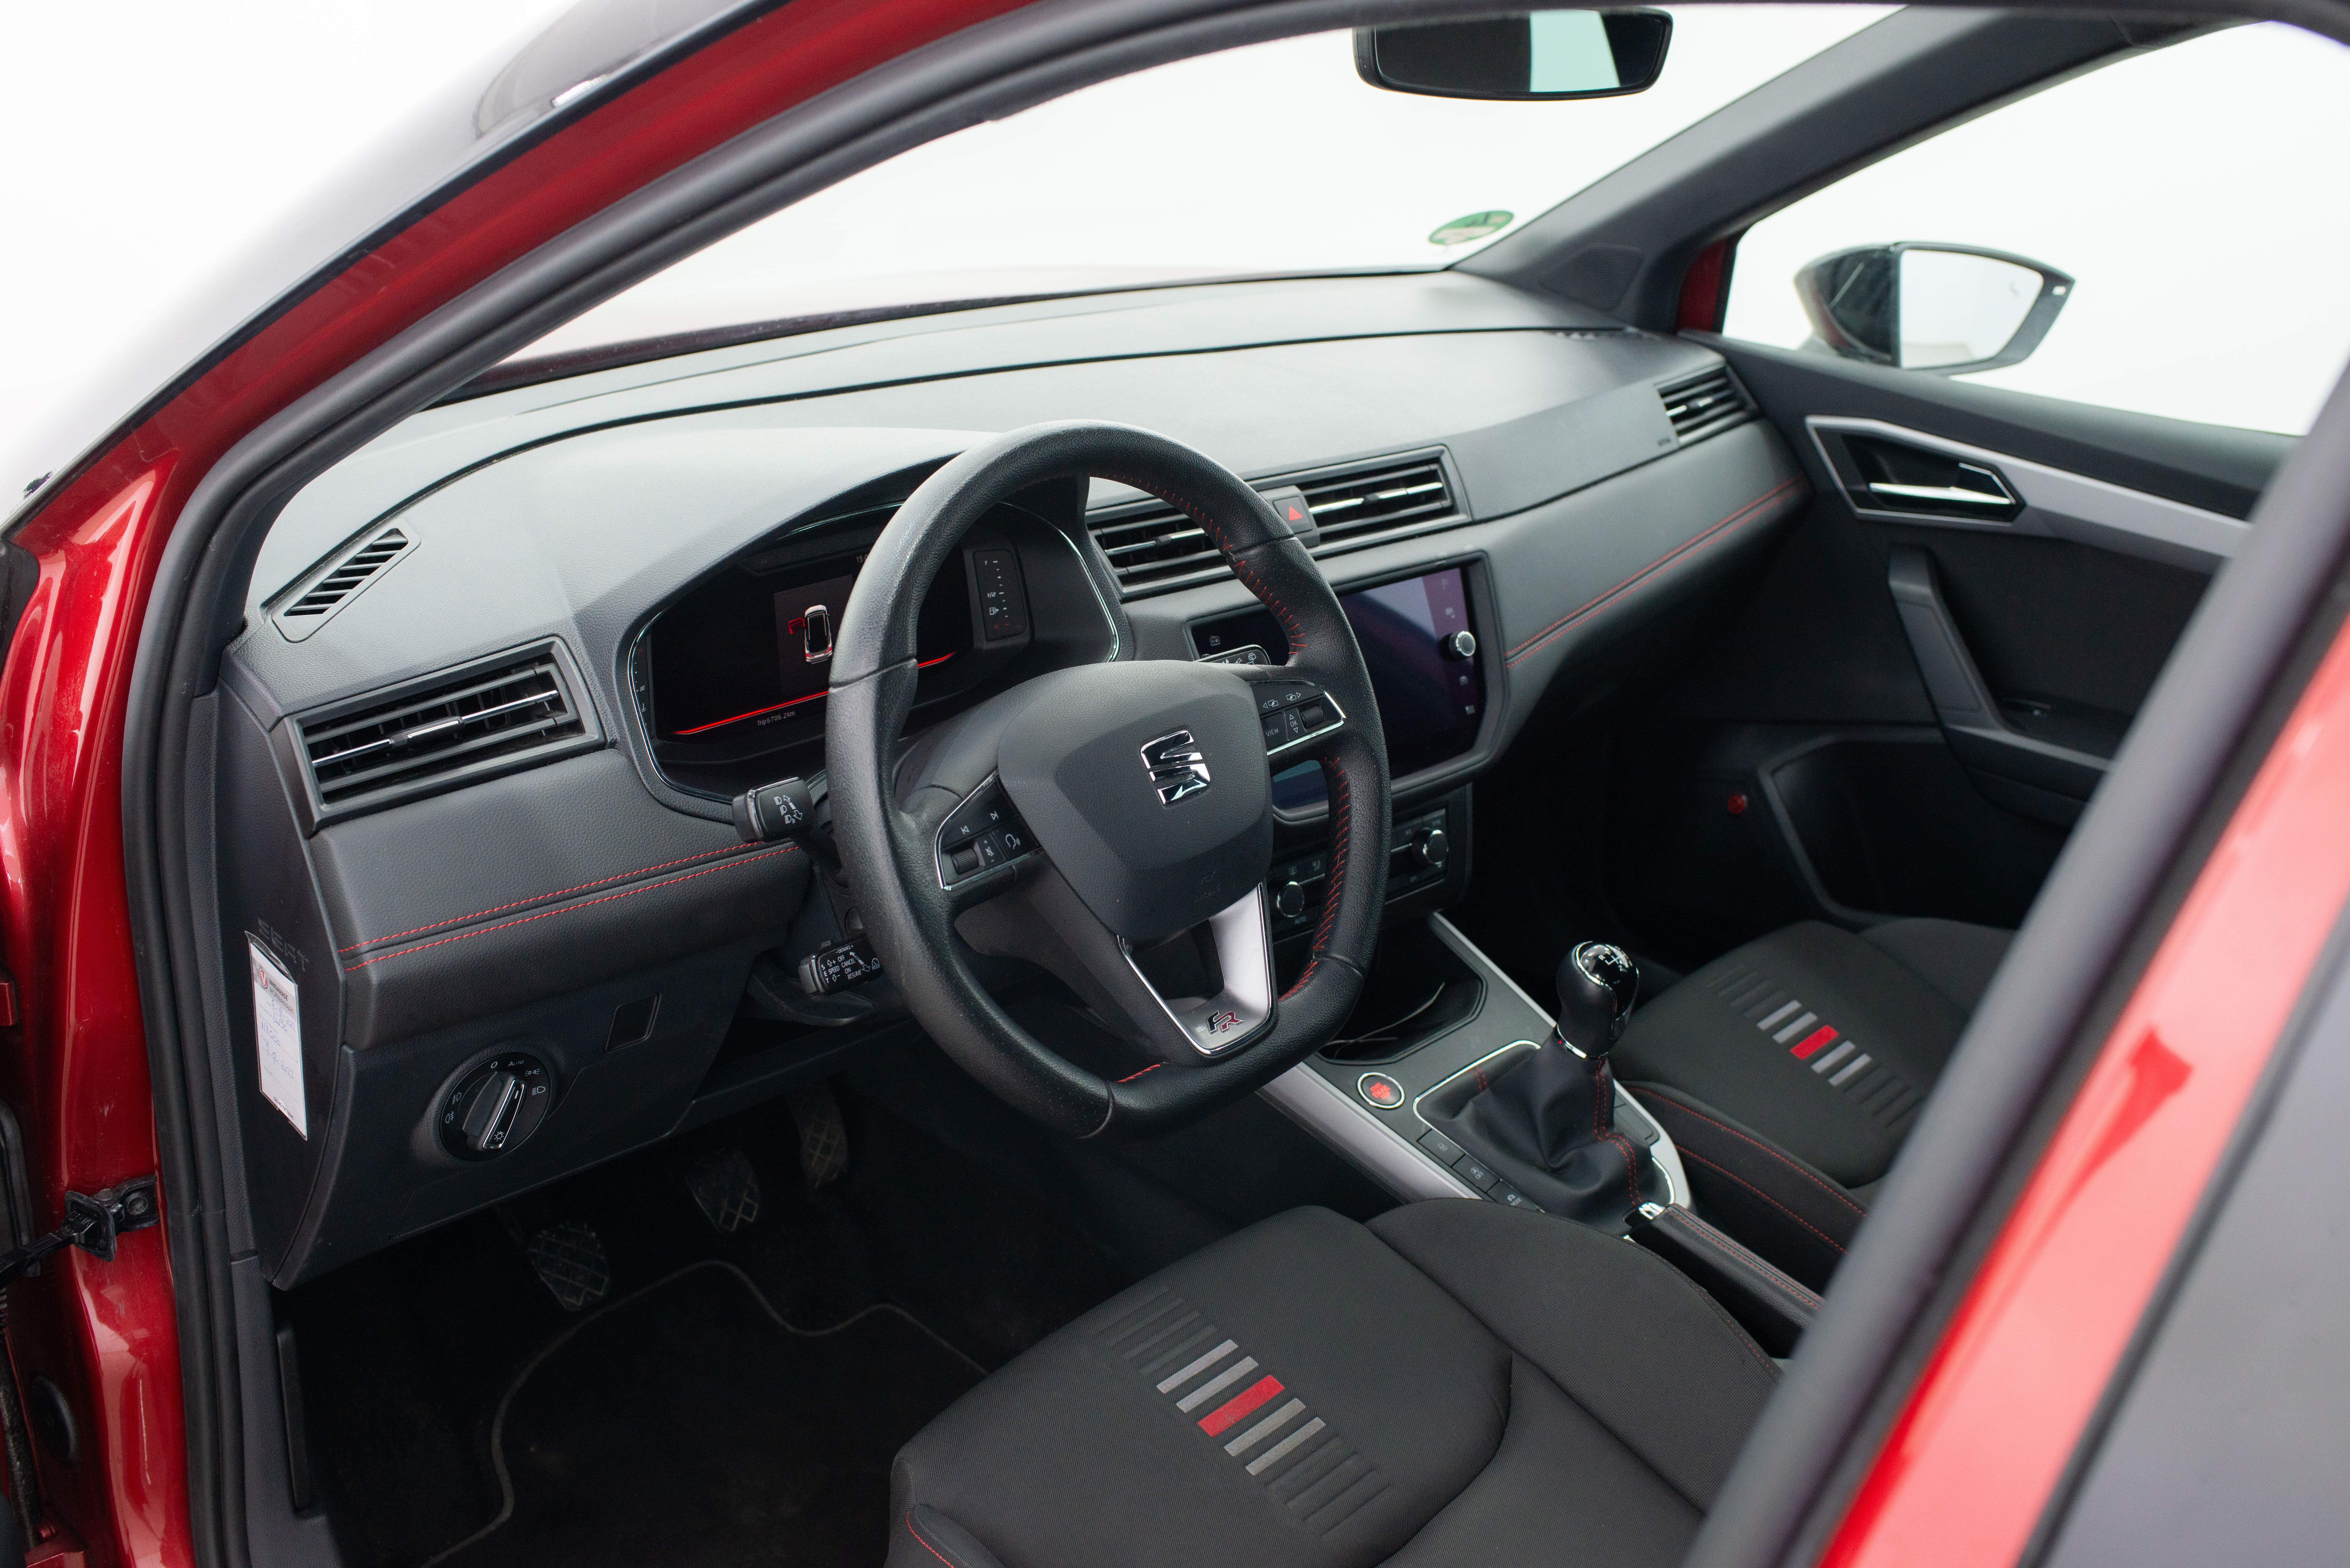 Detalhe do interior de um Seat vermelho